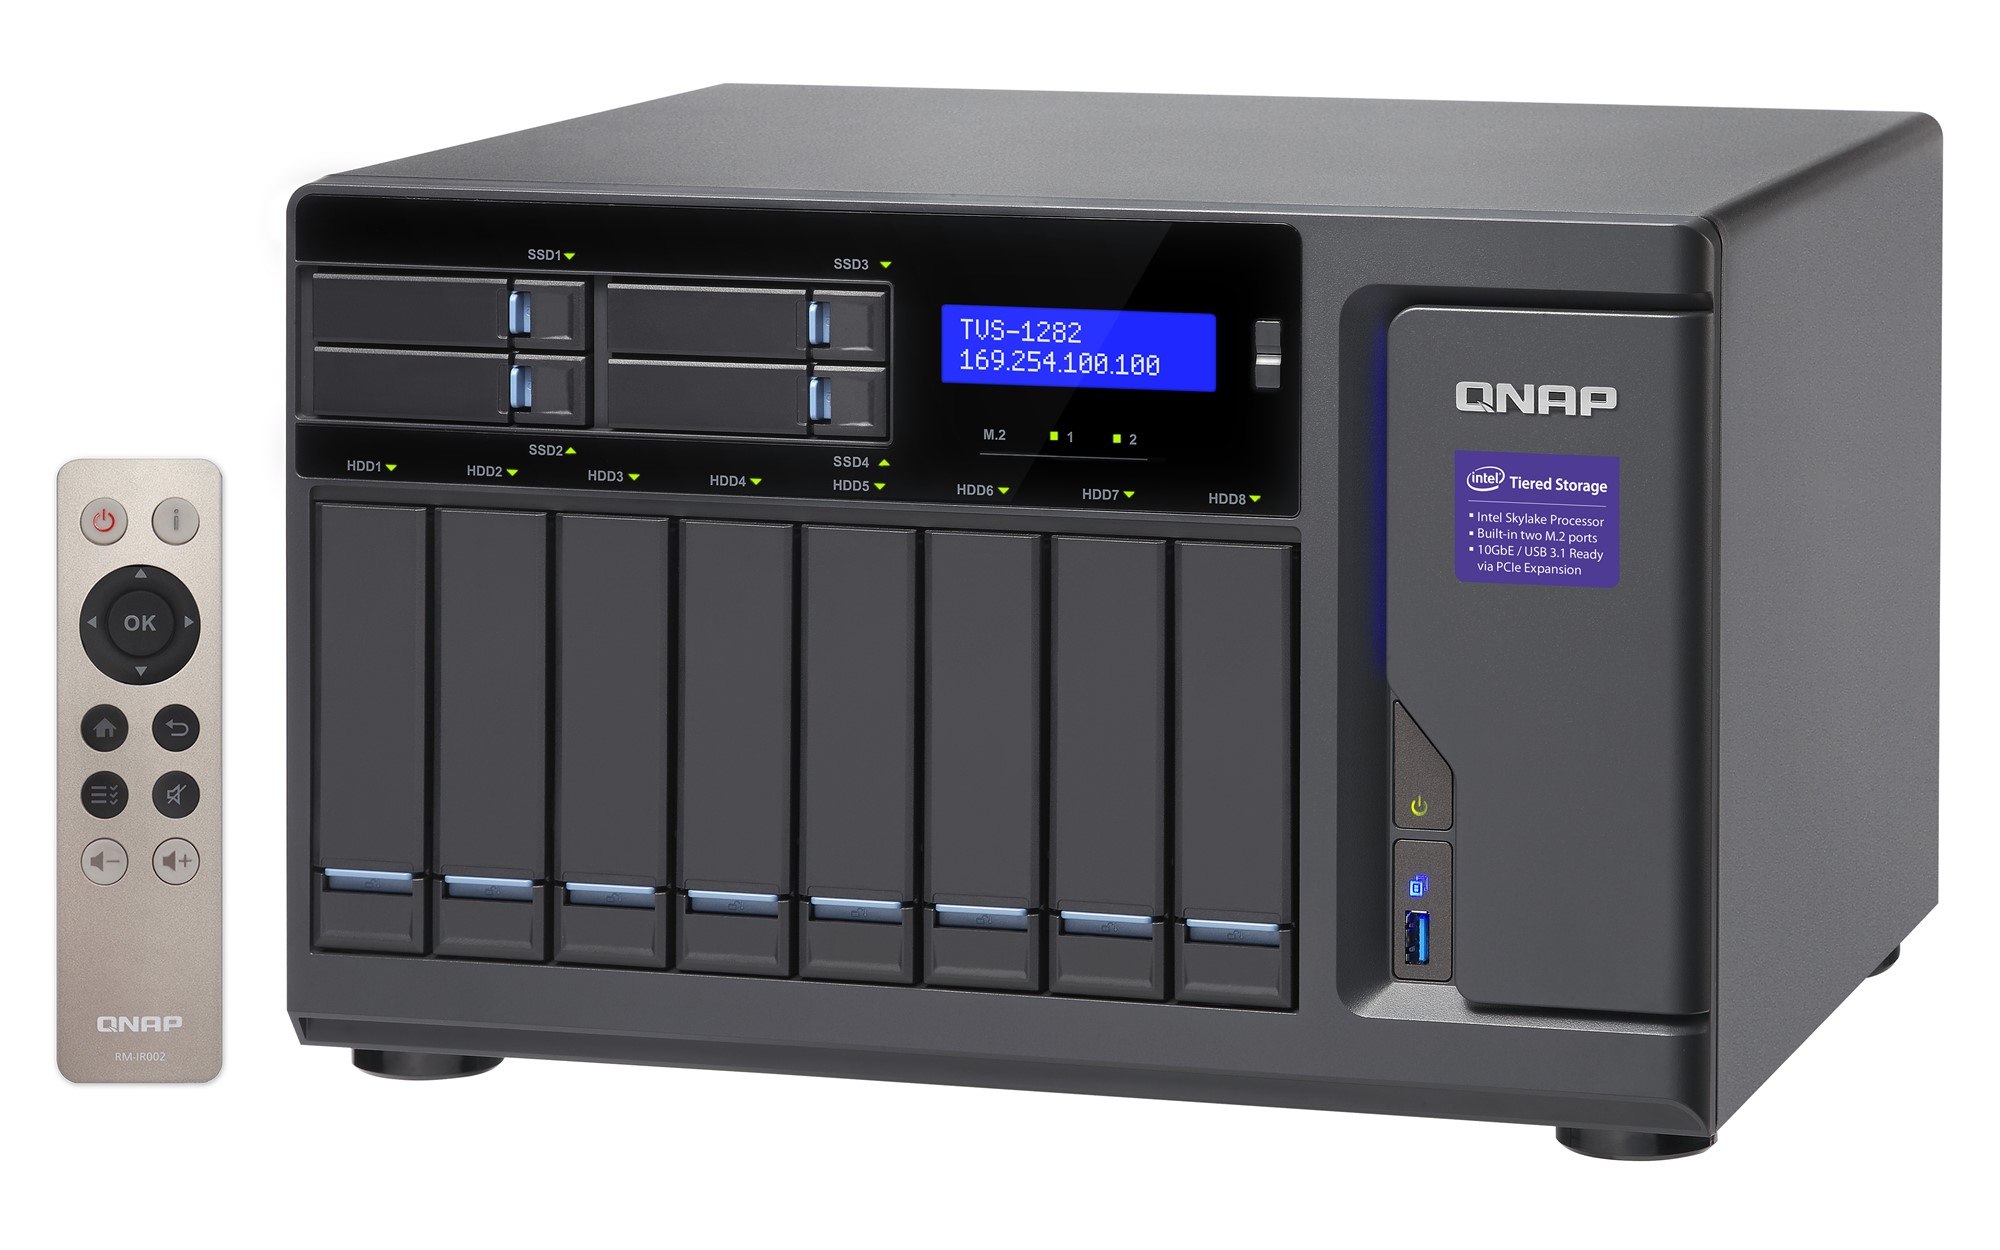 Сетевой RAID-накопитель QNAP 12 отсеков для HDD. Четырехъядерный Intel Core i7-6700 3,4 ГГц, 64 ГБ DDR4 RAM. TVS-1282-I7-64G TVS-1282-I7-64G #5